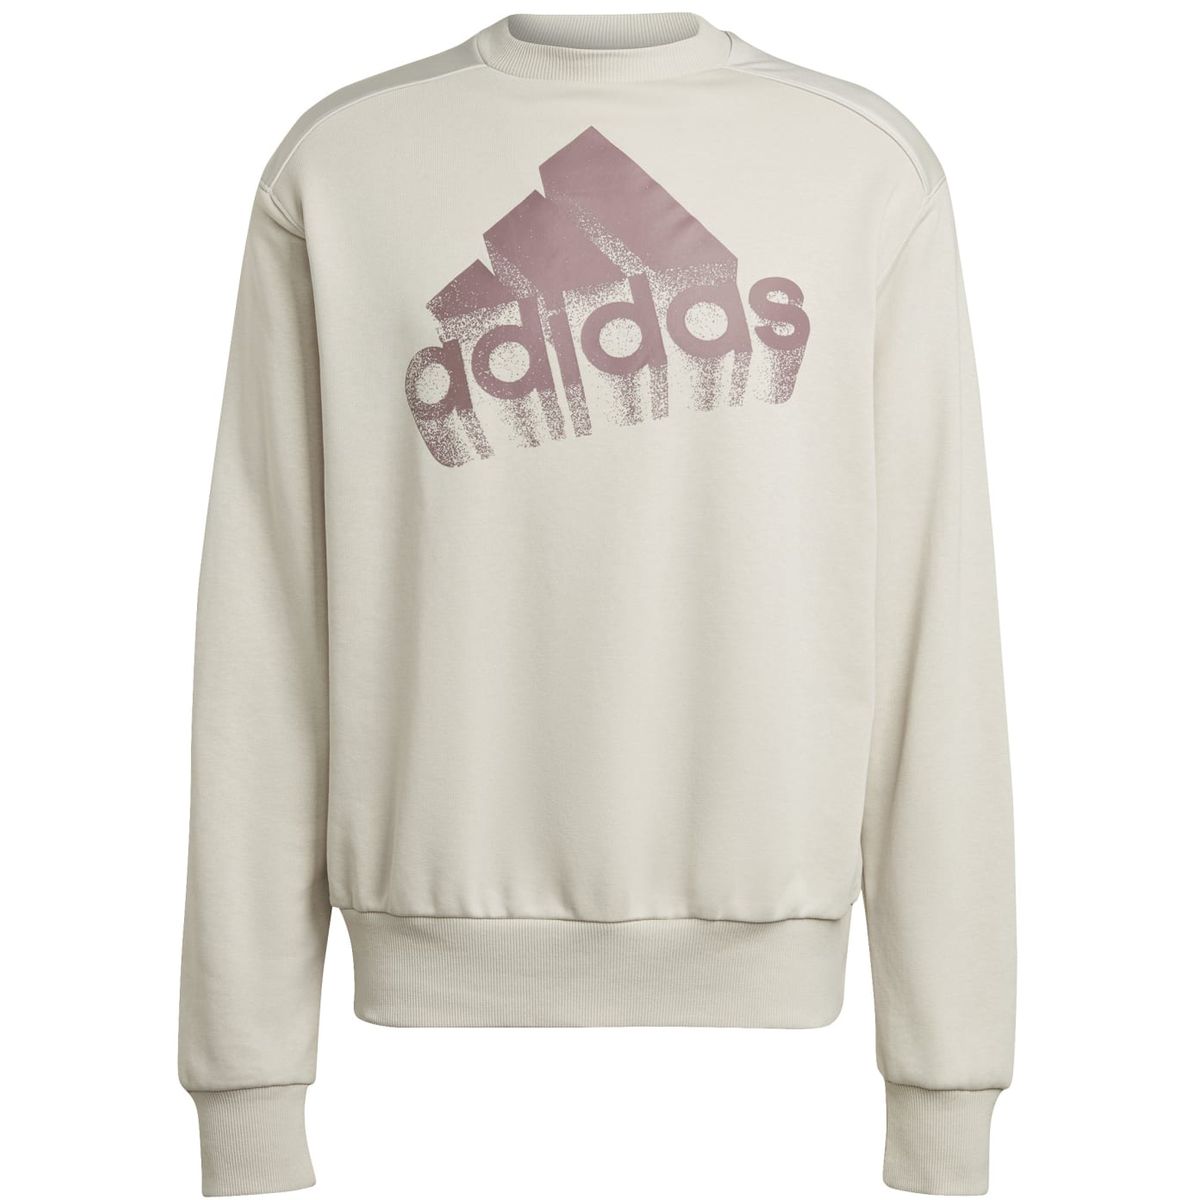 Adidas Essentials Brand Love French Terry Sweatshirt – Genderneutral Unisex